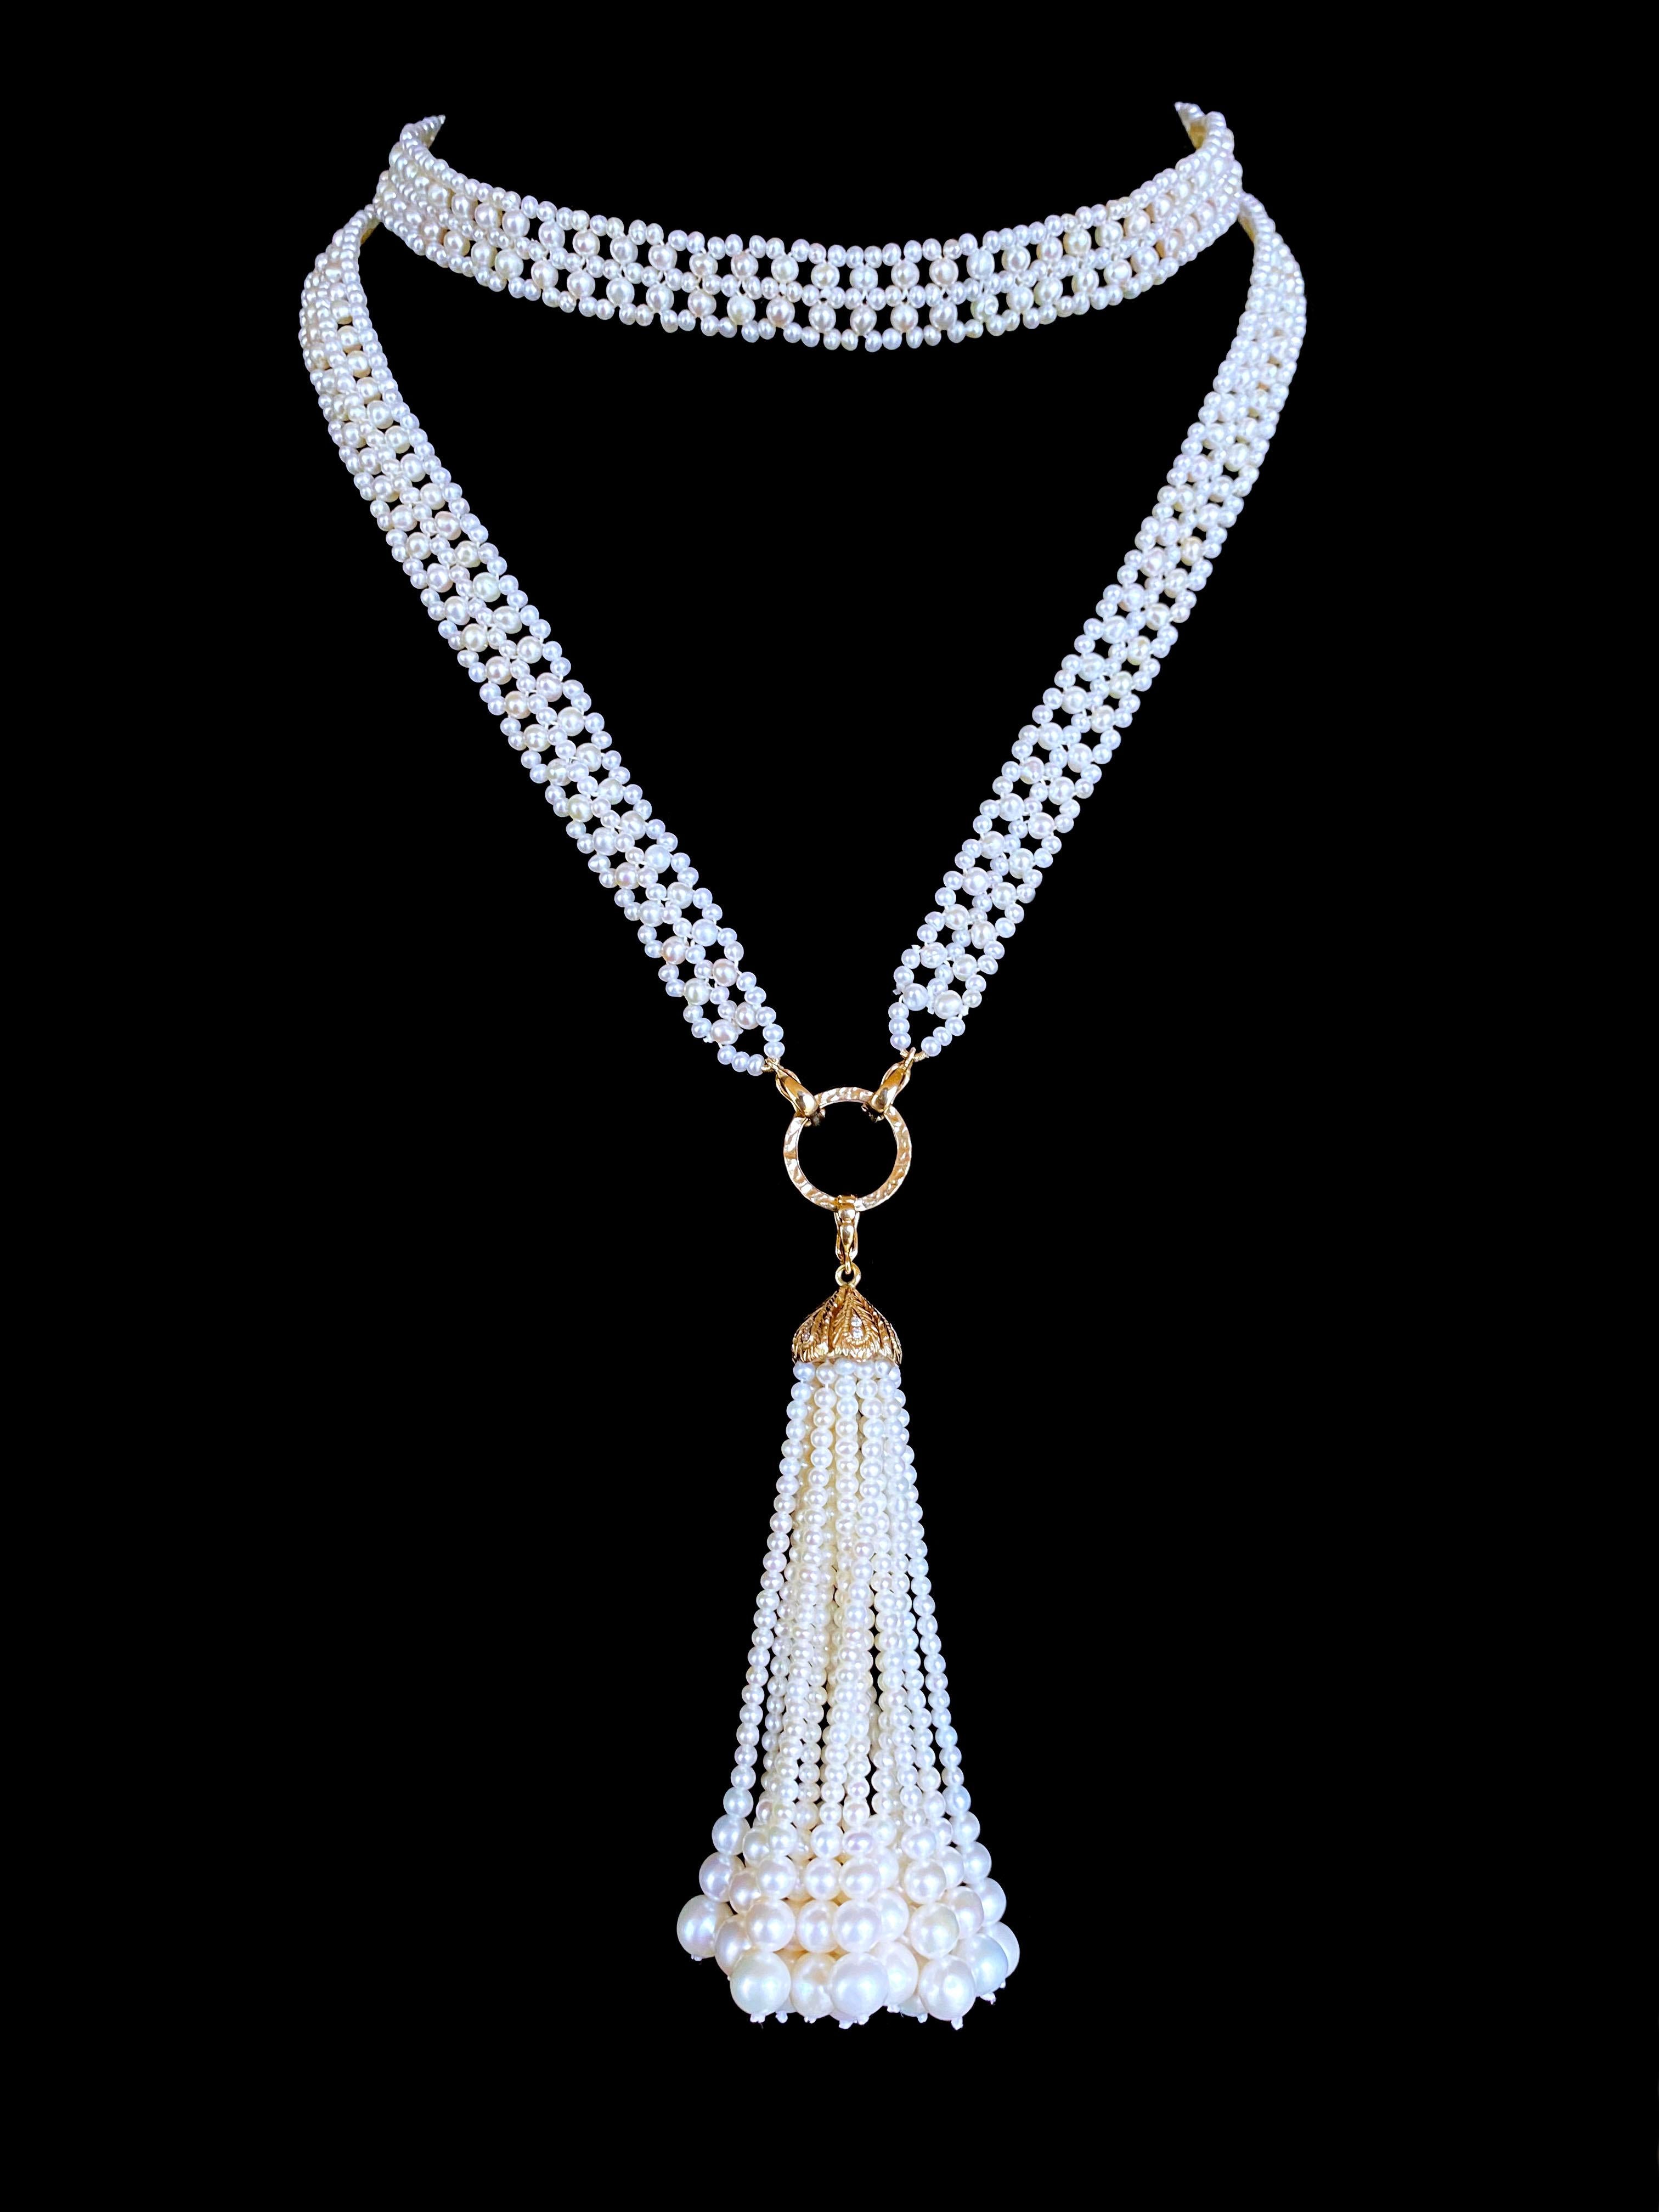 Classique et magnifique Sautoir fermé par Marina J. Ce Sautoir est inspiré par les bijoux du vieux monde et fait de perles de rocaille tissées ensemble de façon complexe dans un design fin comme de la dentelle. Mesurant 35 pouces de long sans le